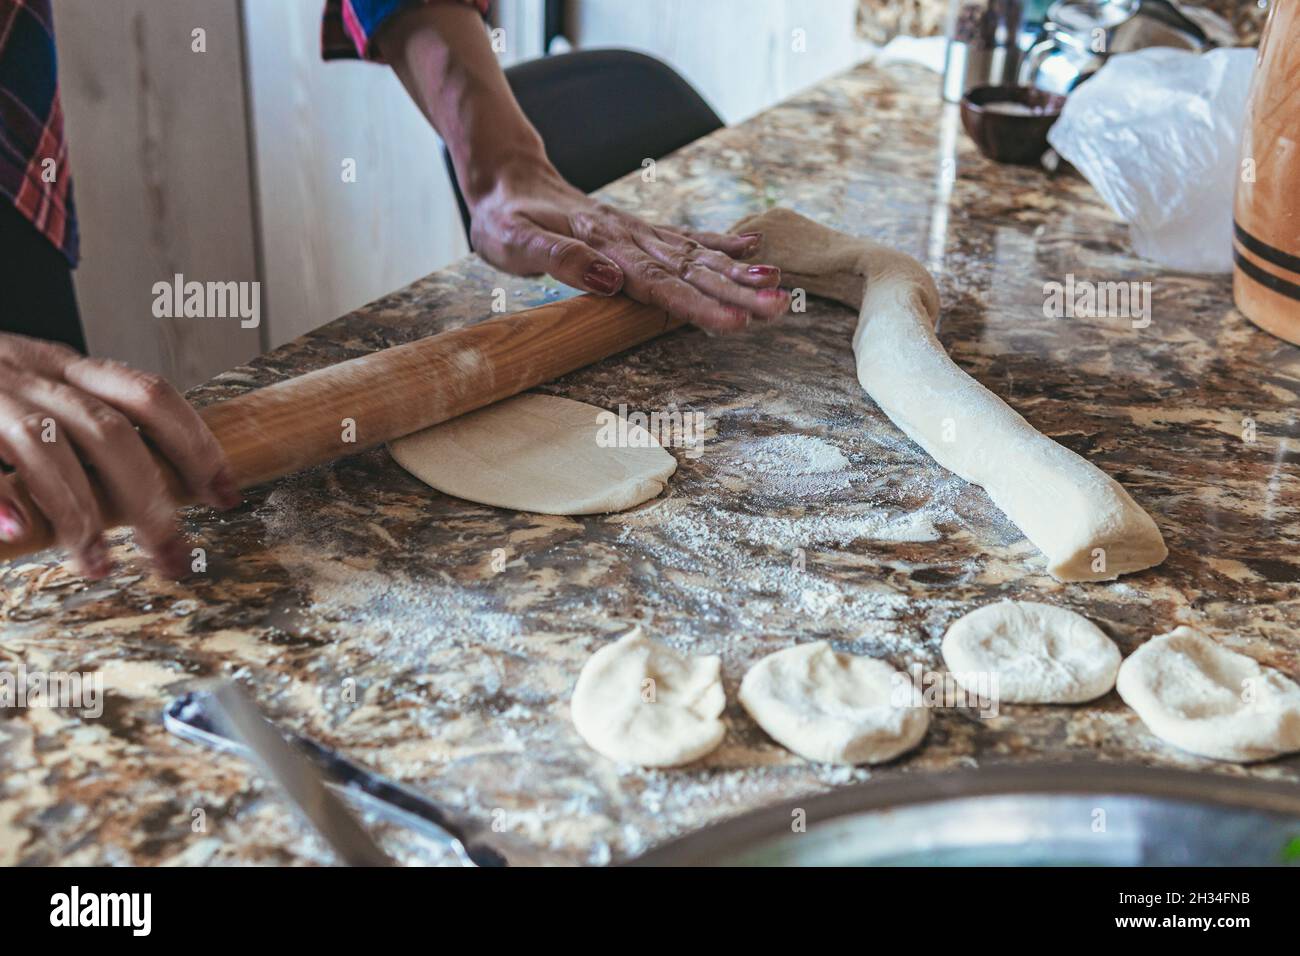 Frau, die zu Hause Pasteten kocht, auch Somsa genannt, und aus Teig Lebensmittel zubereitet Stockfoto